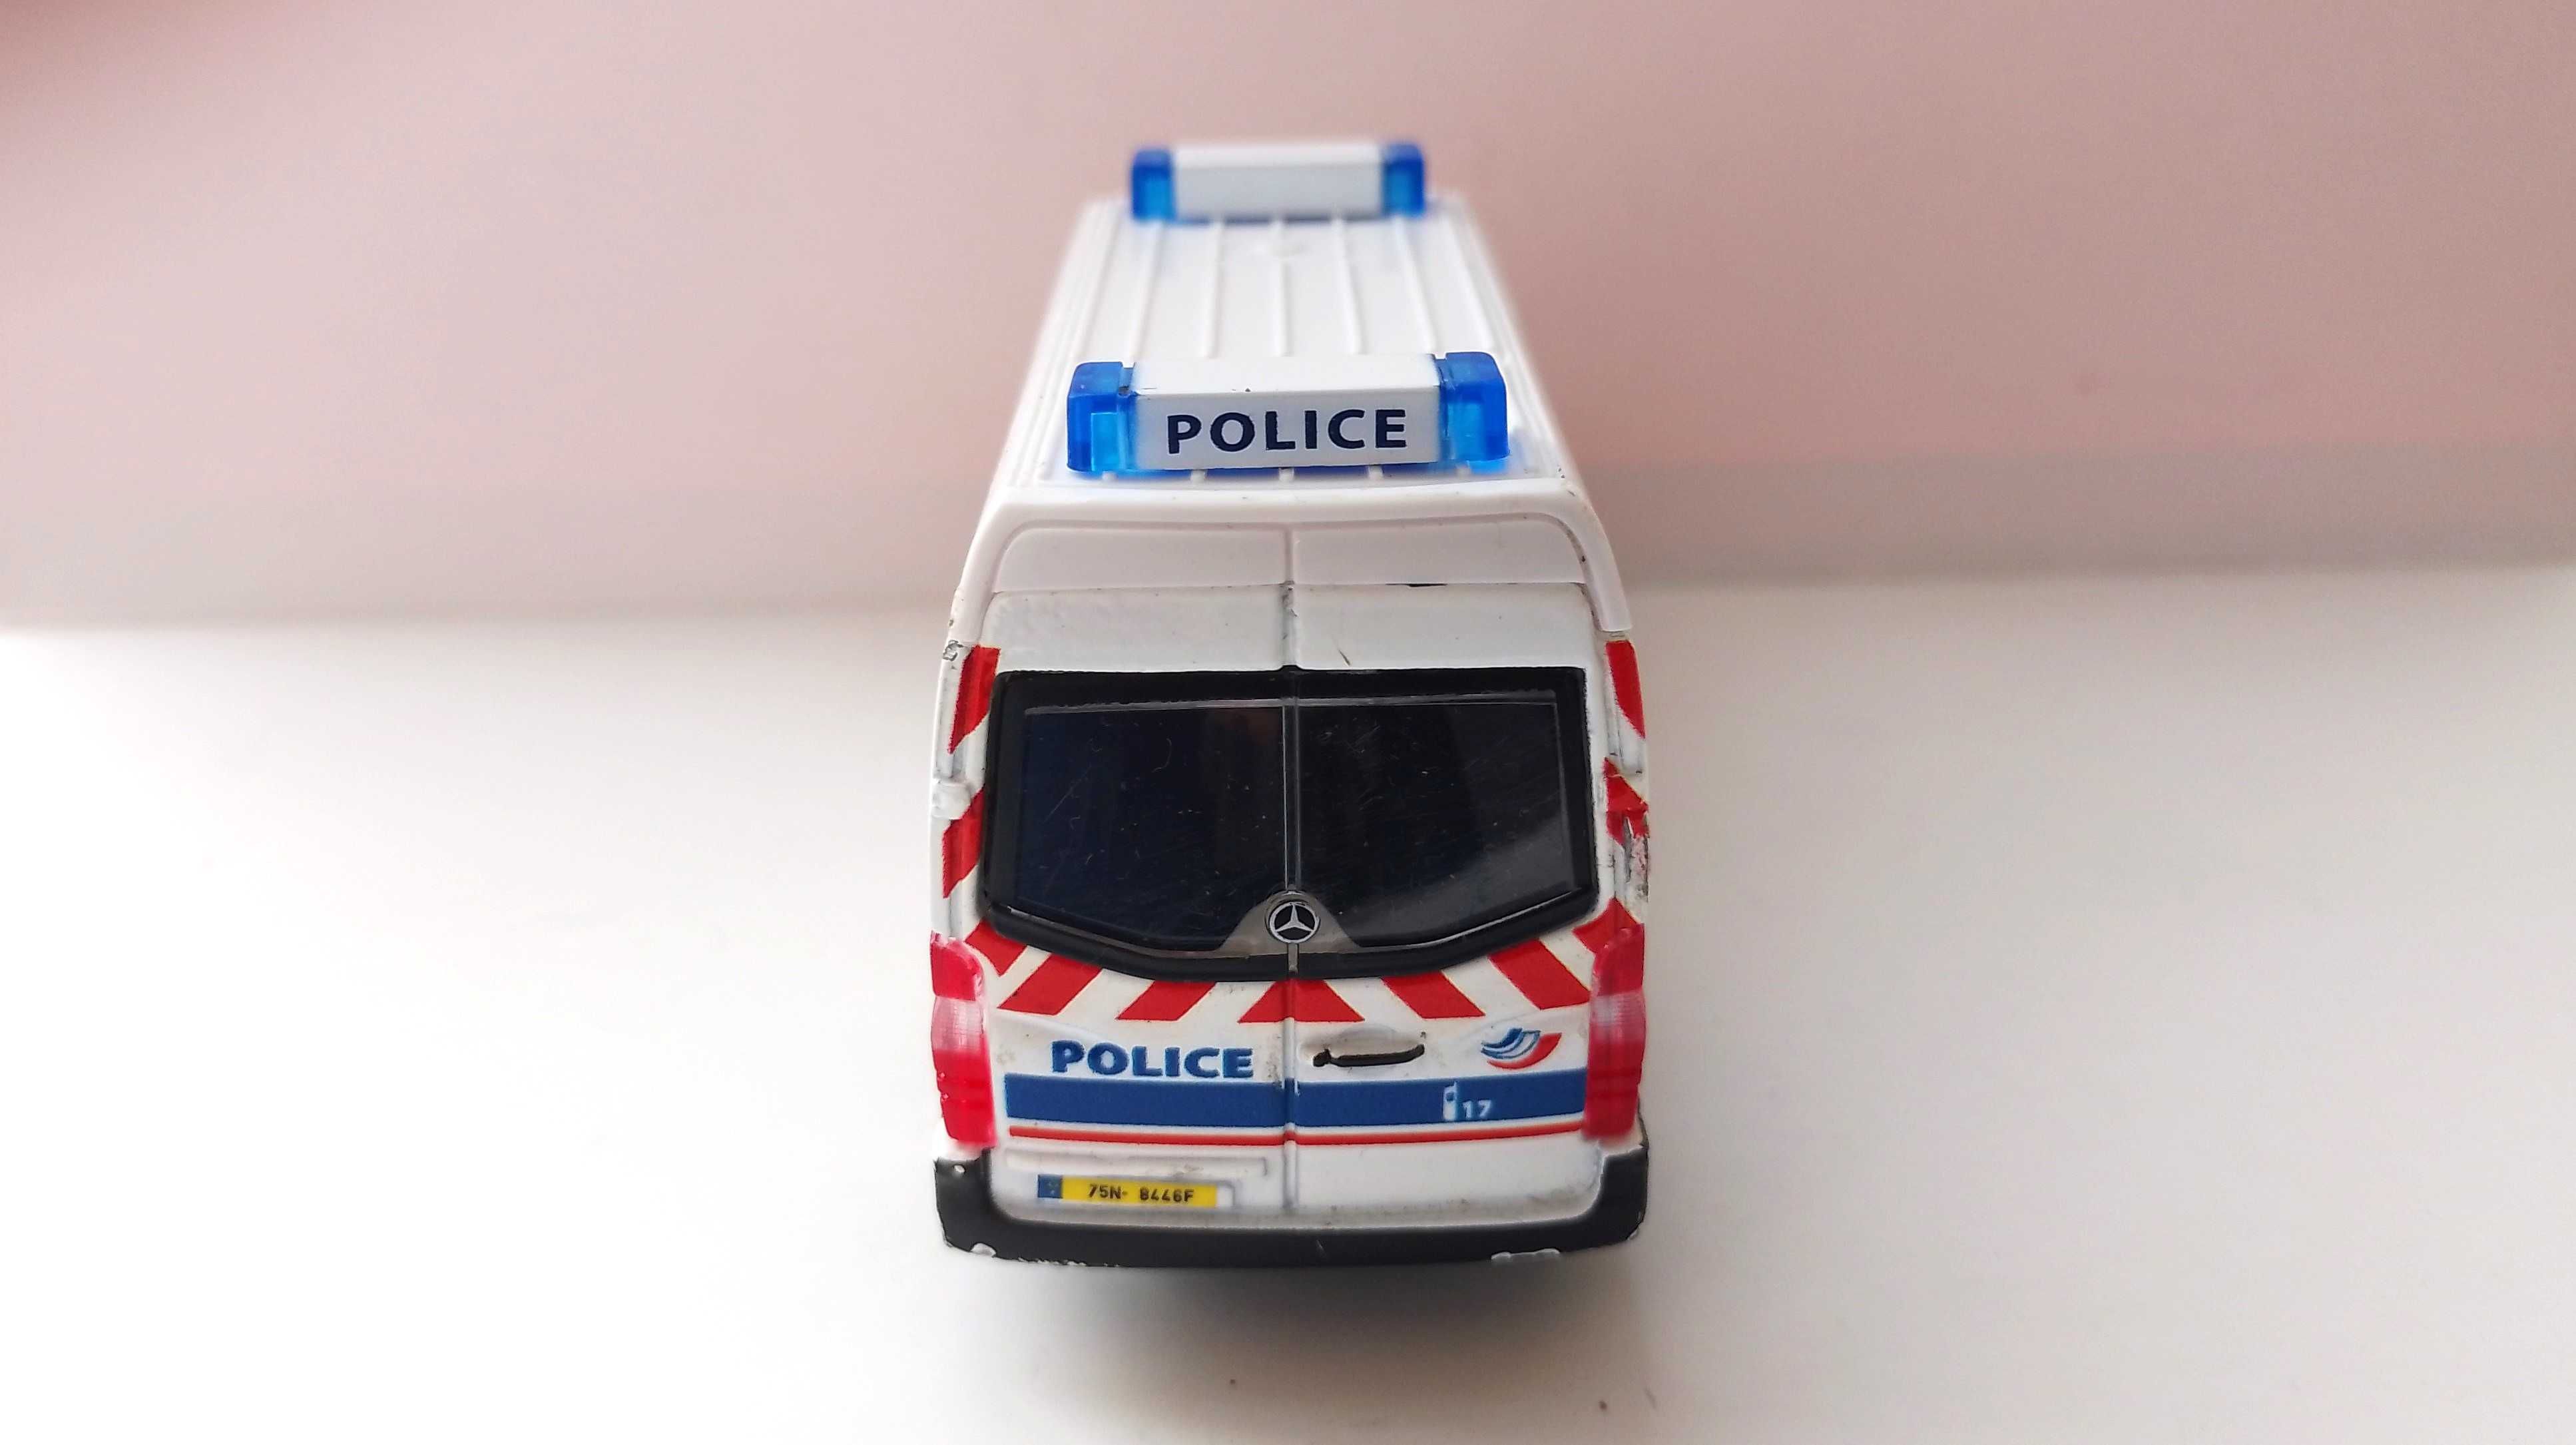 Bburago Mercedes-Benz Sprinter и VITO - POLICE